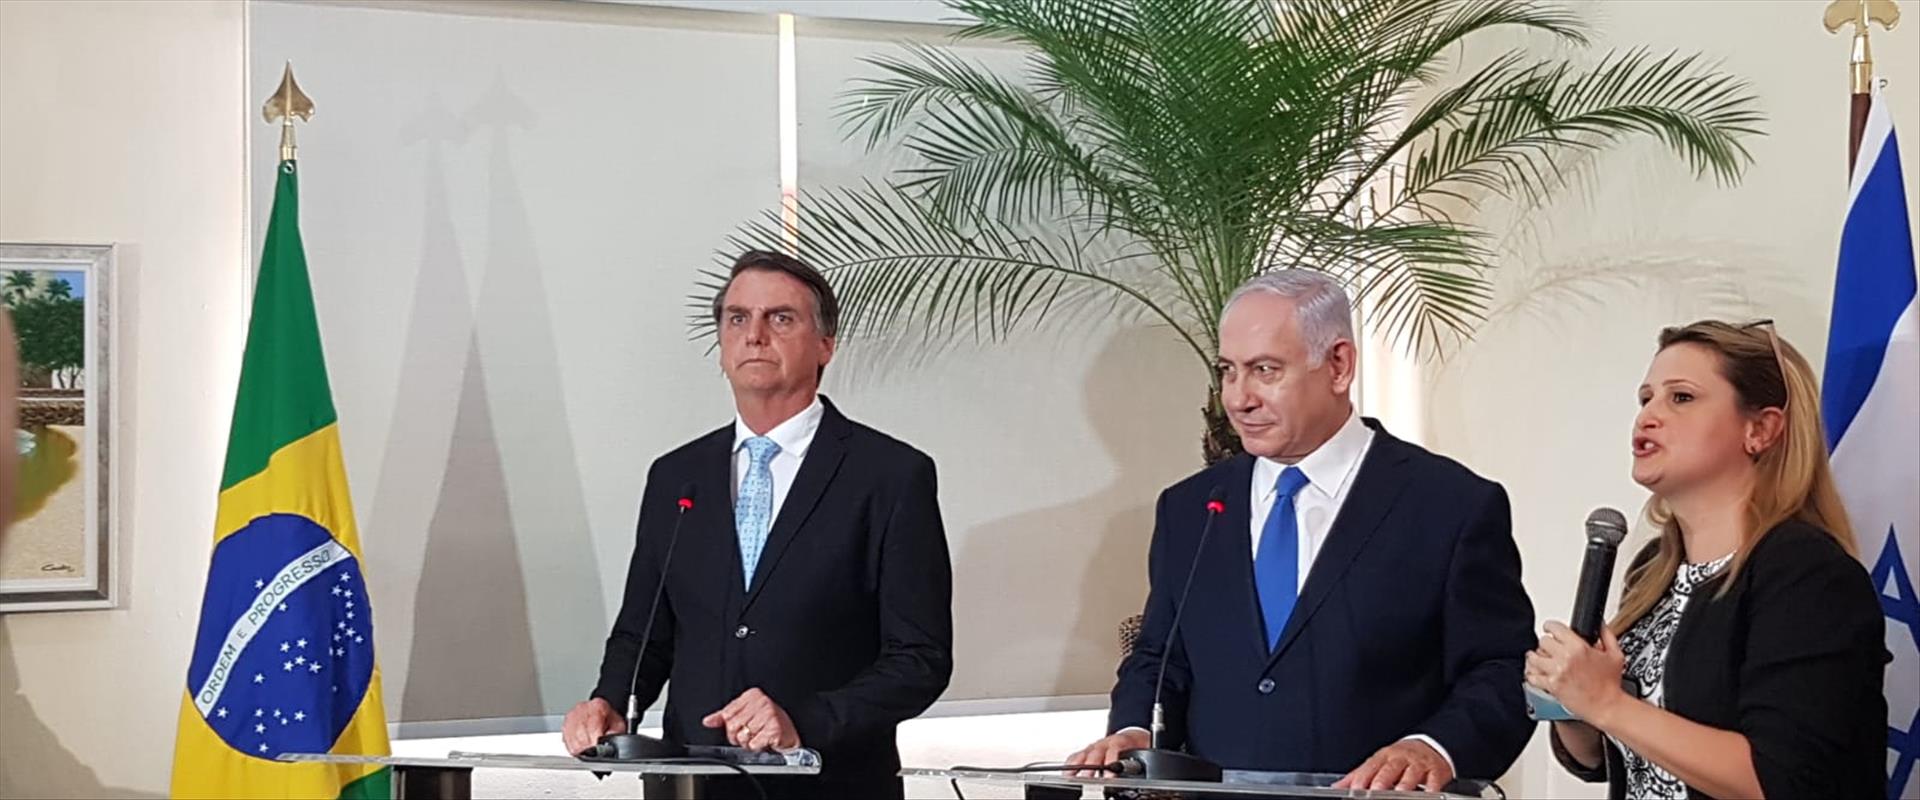 רה"מ נתניהו ונשיא ברזיל בולסונארו